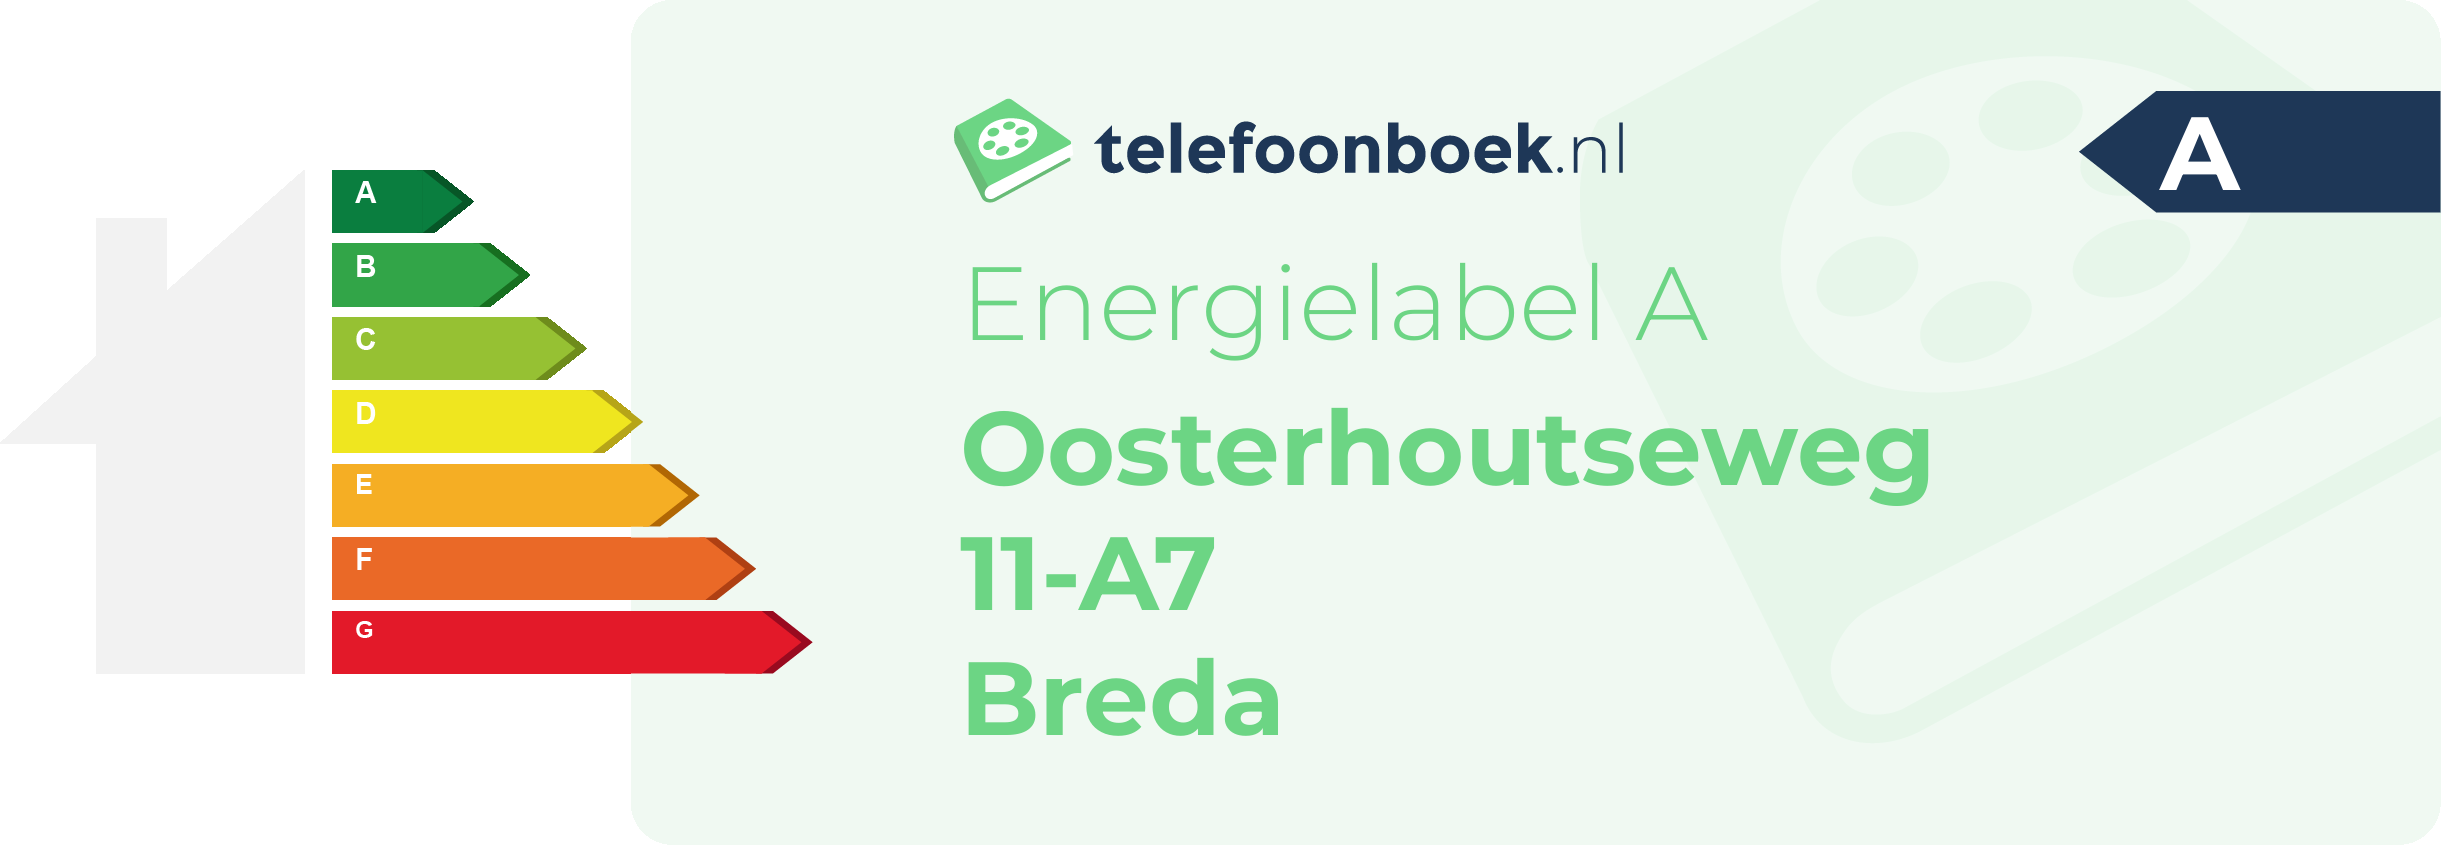 Energielabel Oosterhoutseweg 11-A7 Breda